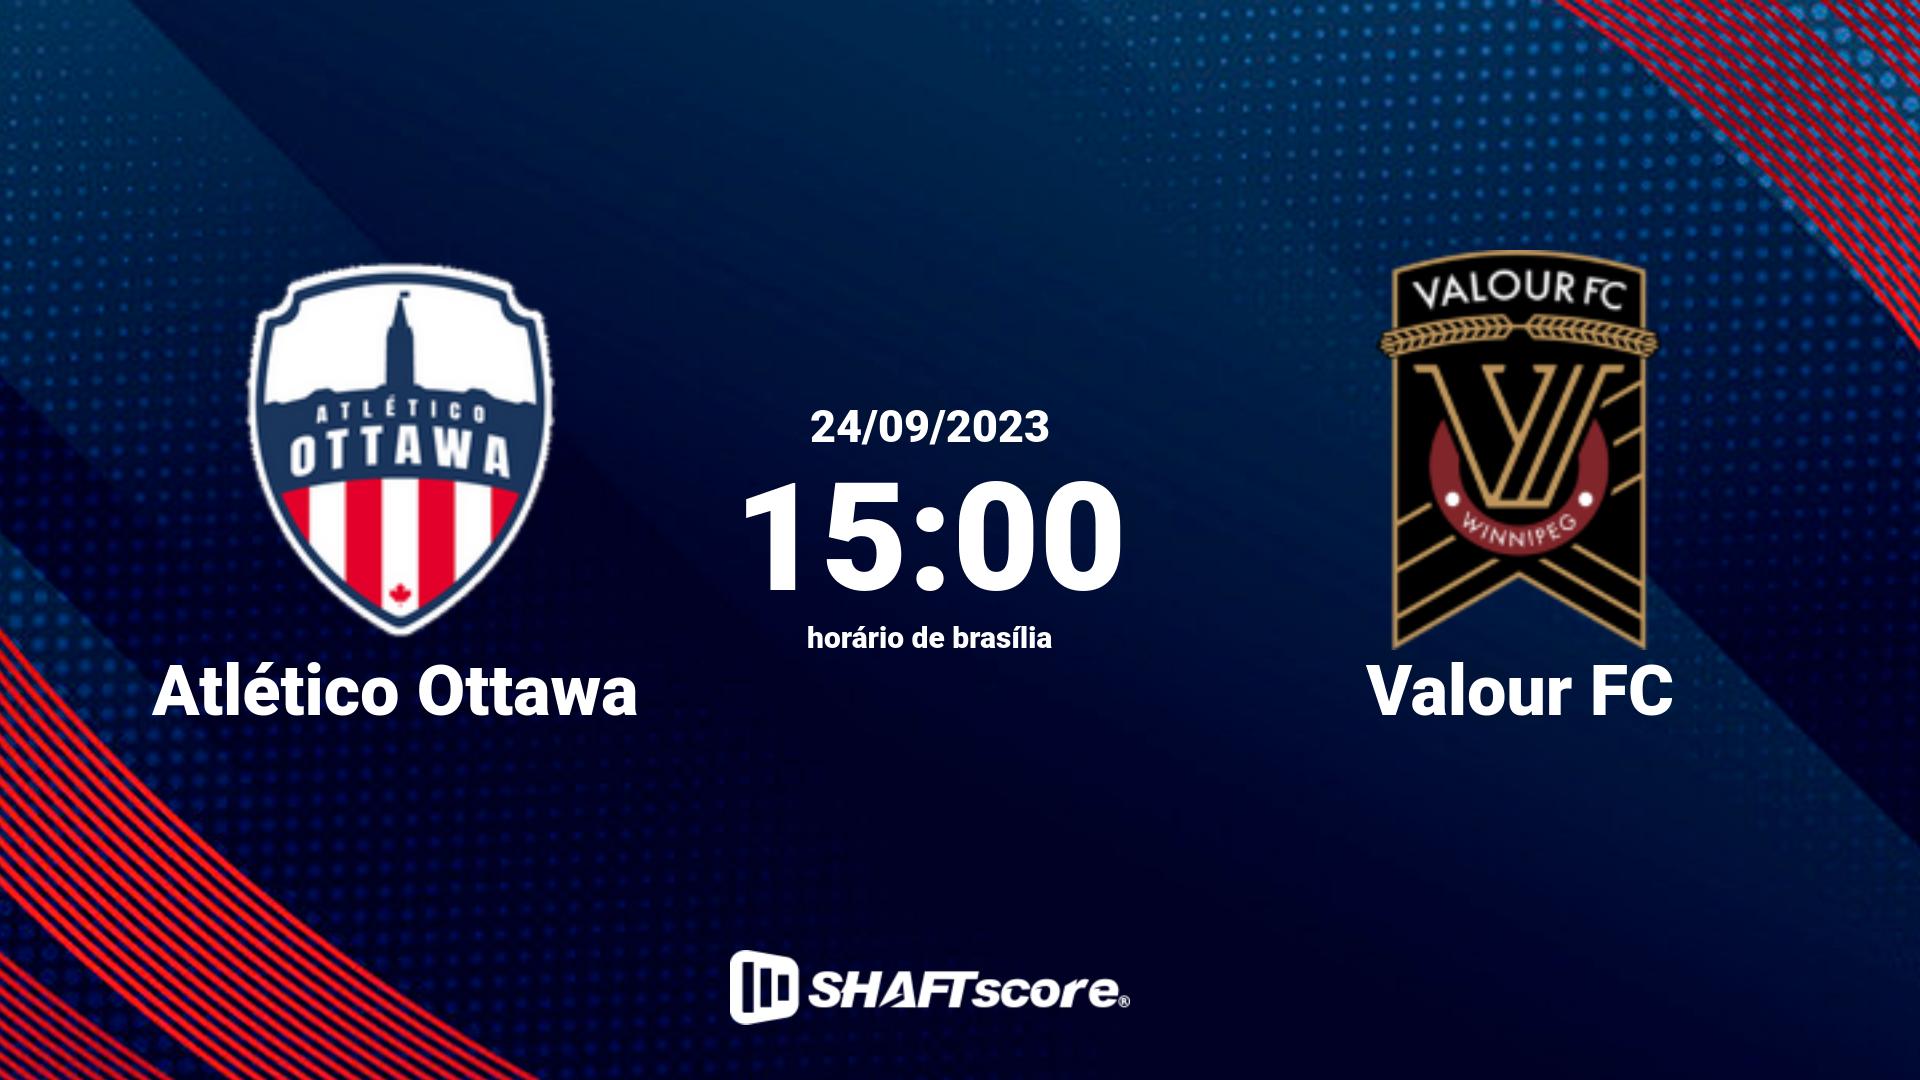 Estatísticas do jogo Atlético Ottawa vs Valour FC 24.09 15:00